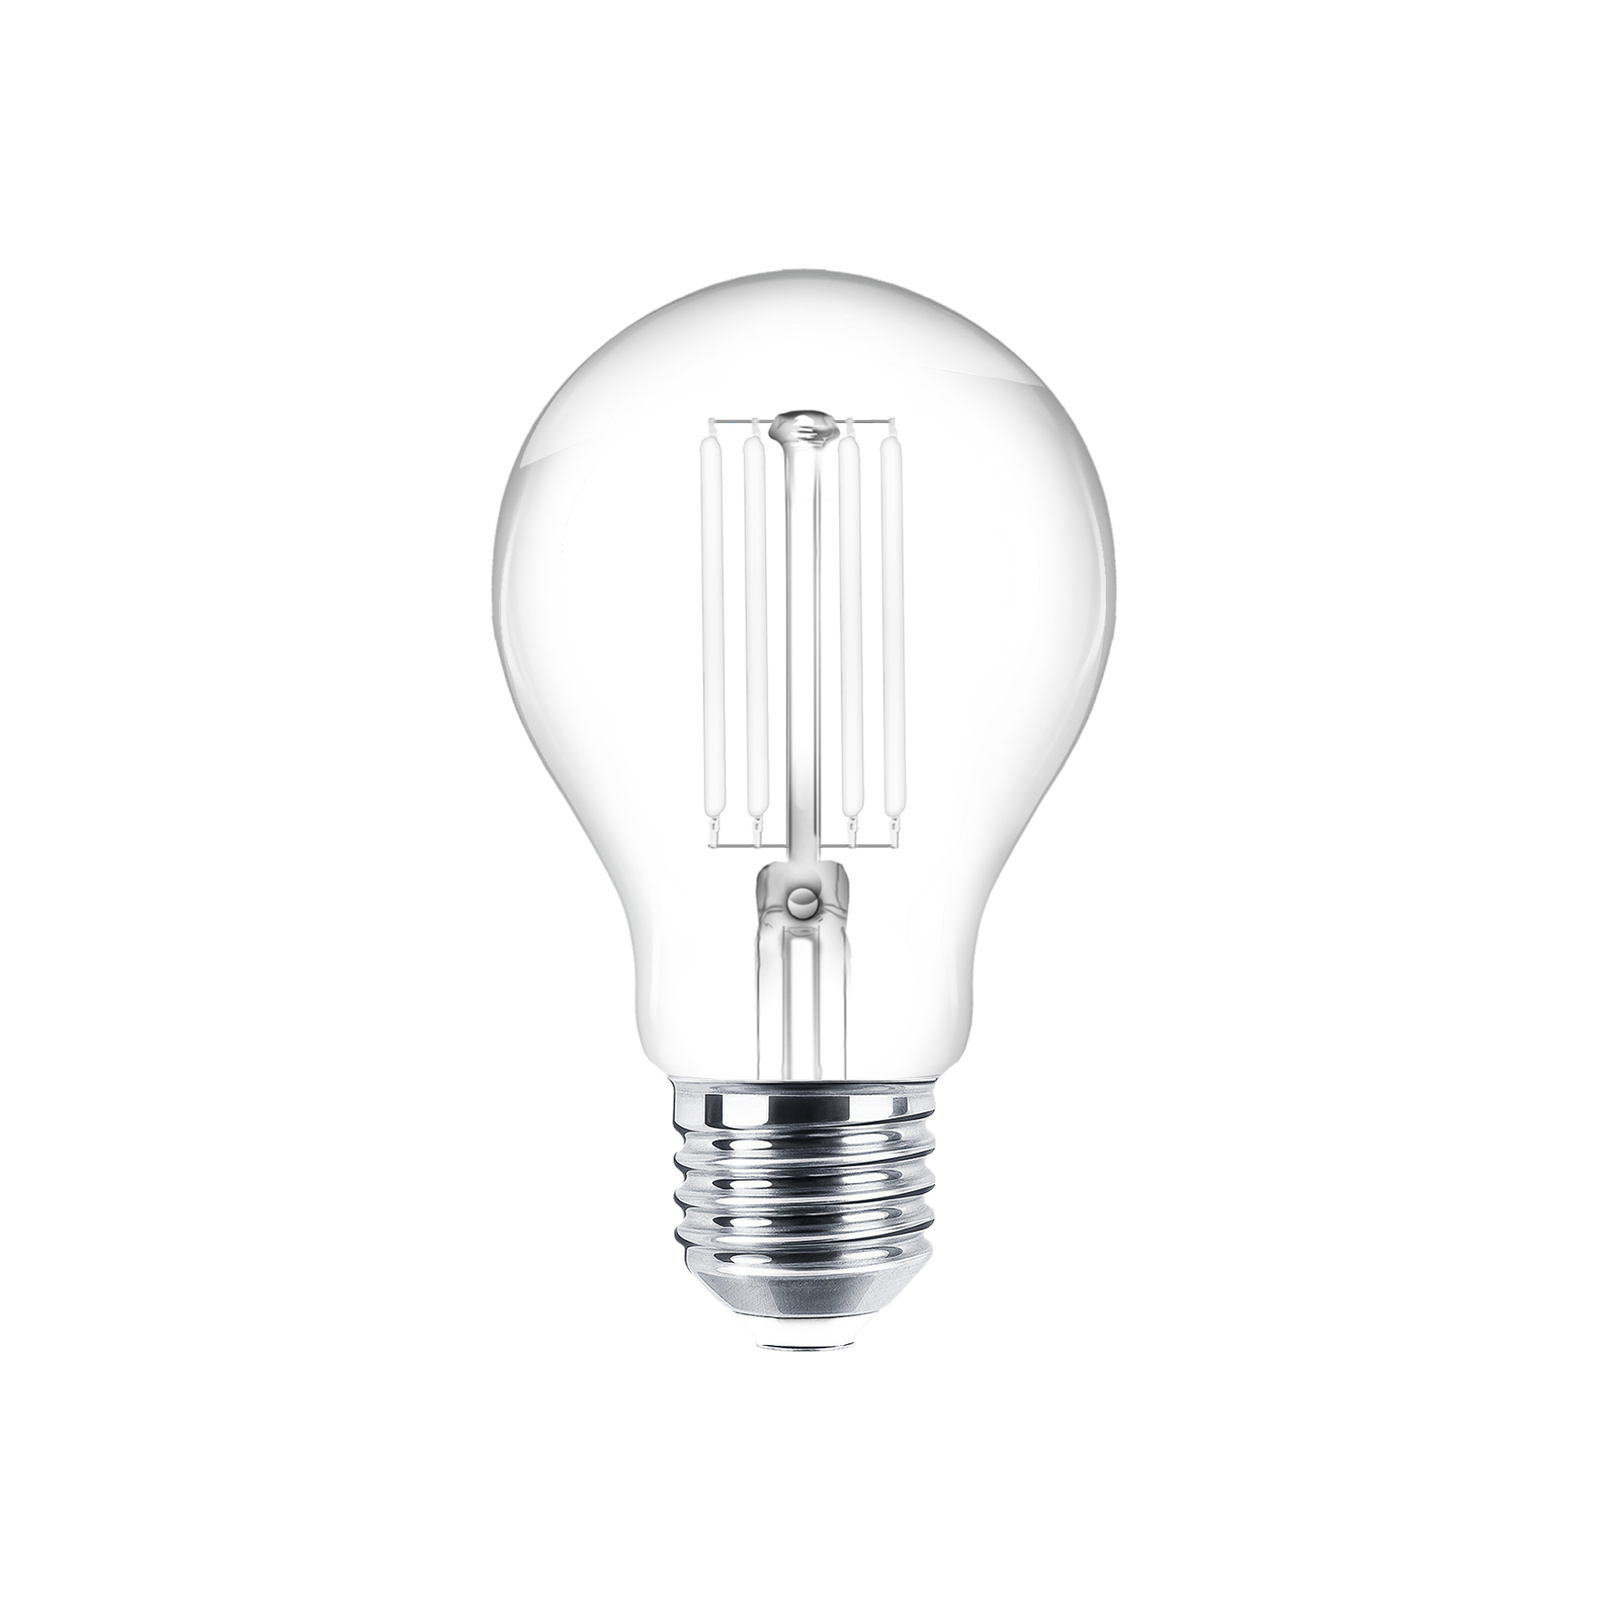 LED bulb filament E27 clear 7W 2700K 806lm set of 3